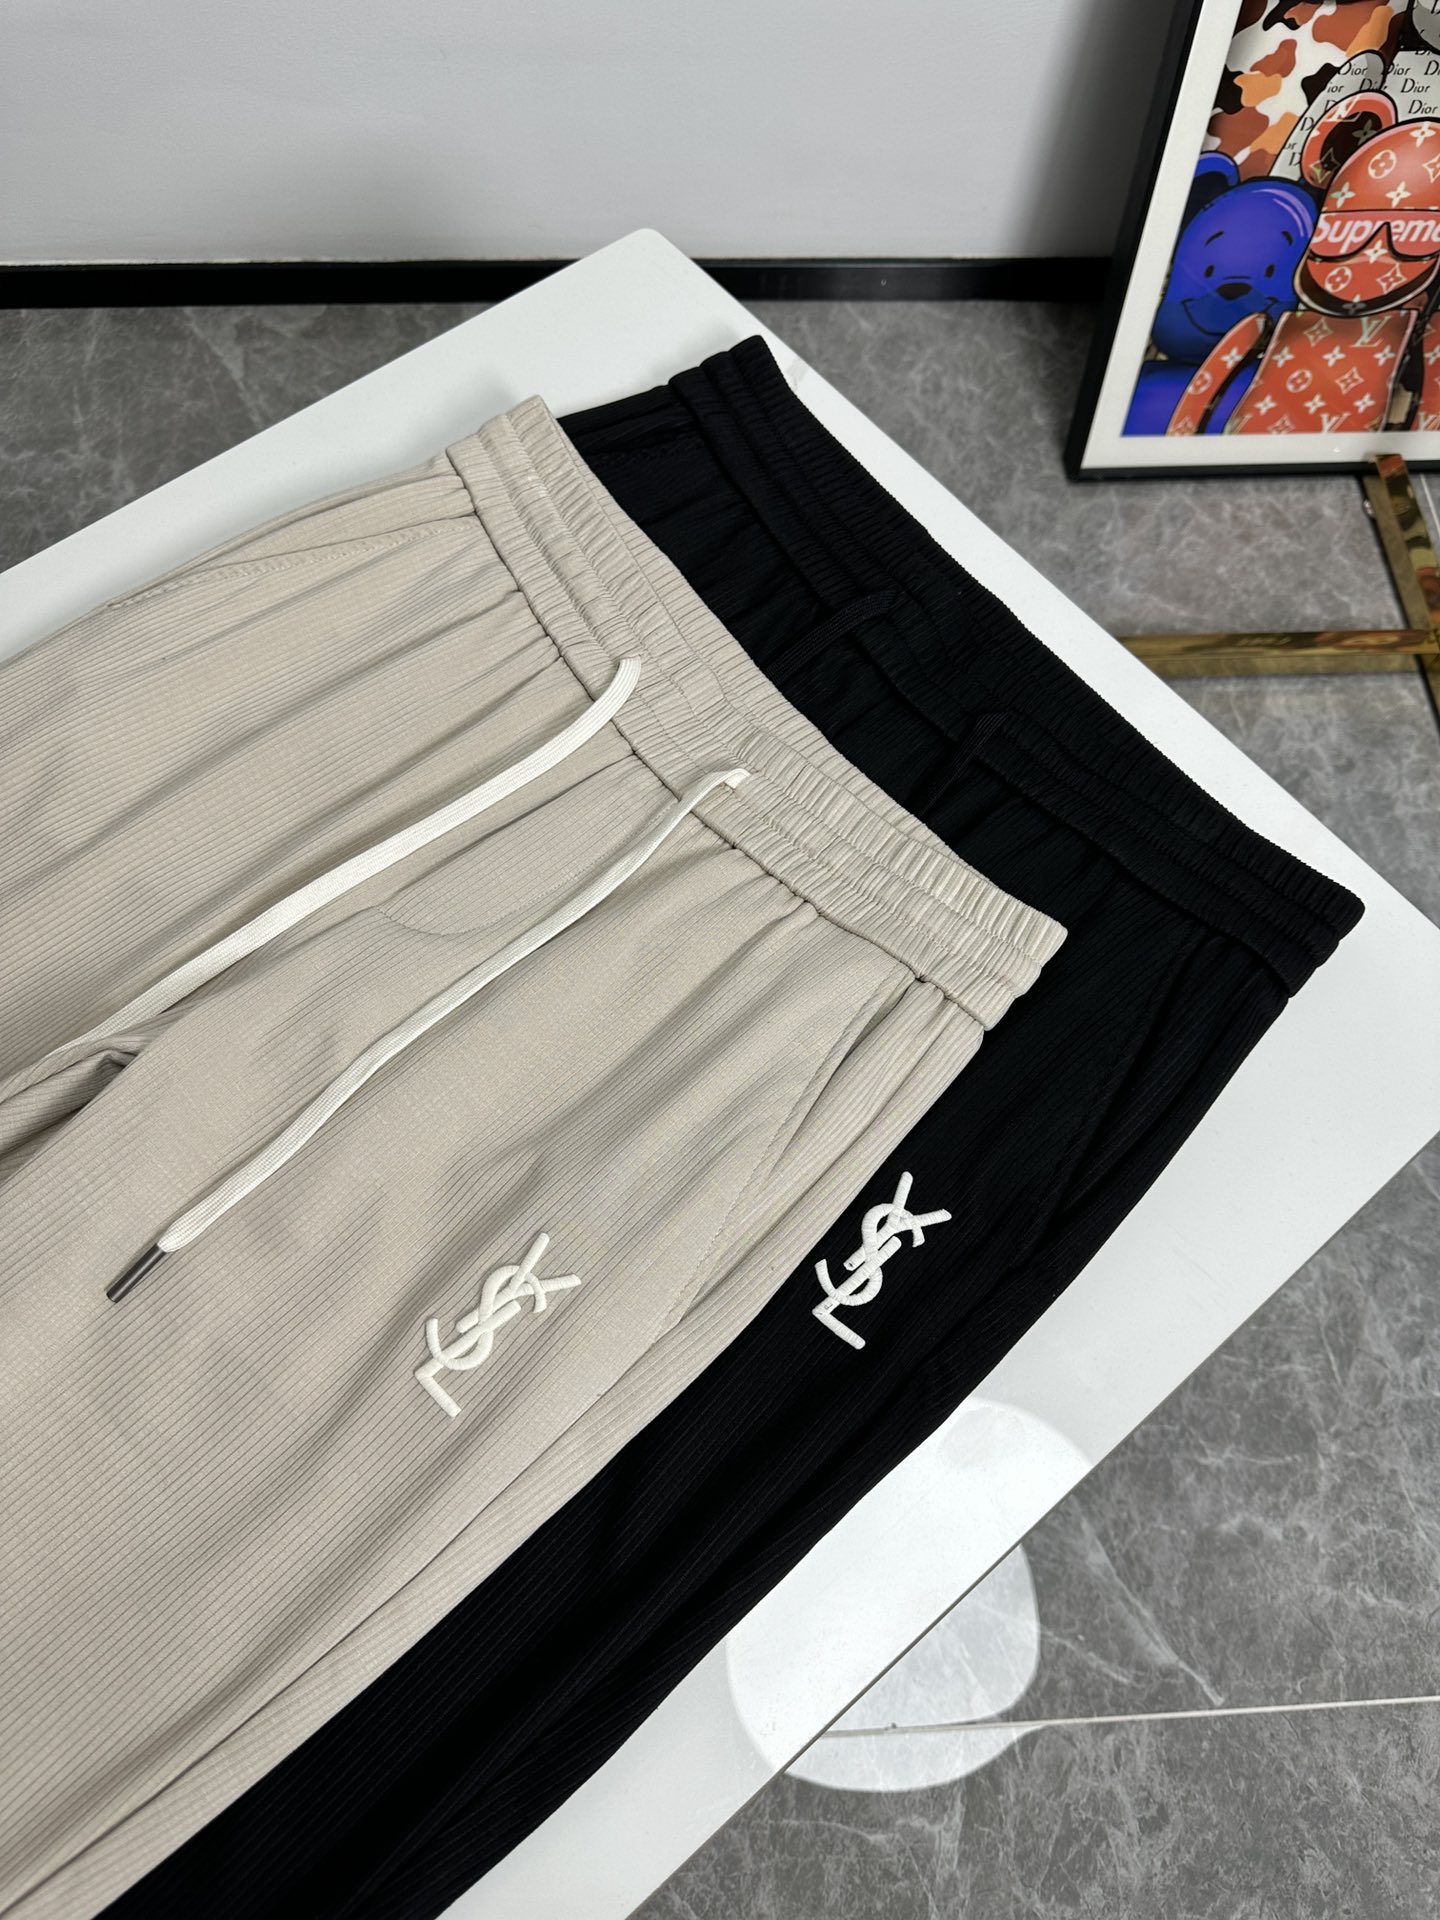 欧货YSL圣罗蓝家-24ss春夏新款进口纯棉质地复合面料再见基础款帅气卫裤.....一线时尚品牌出色独到